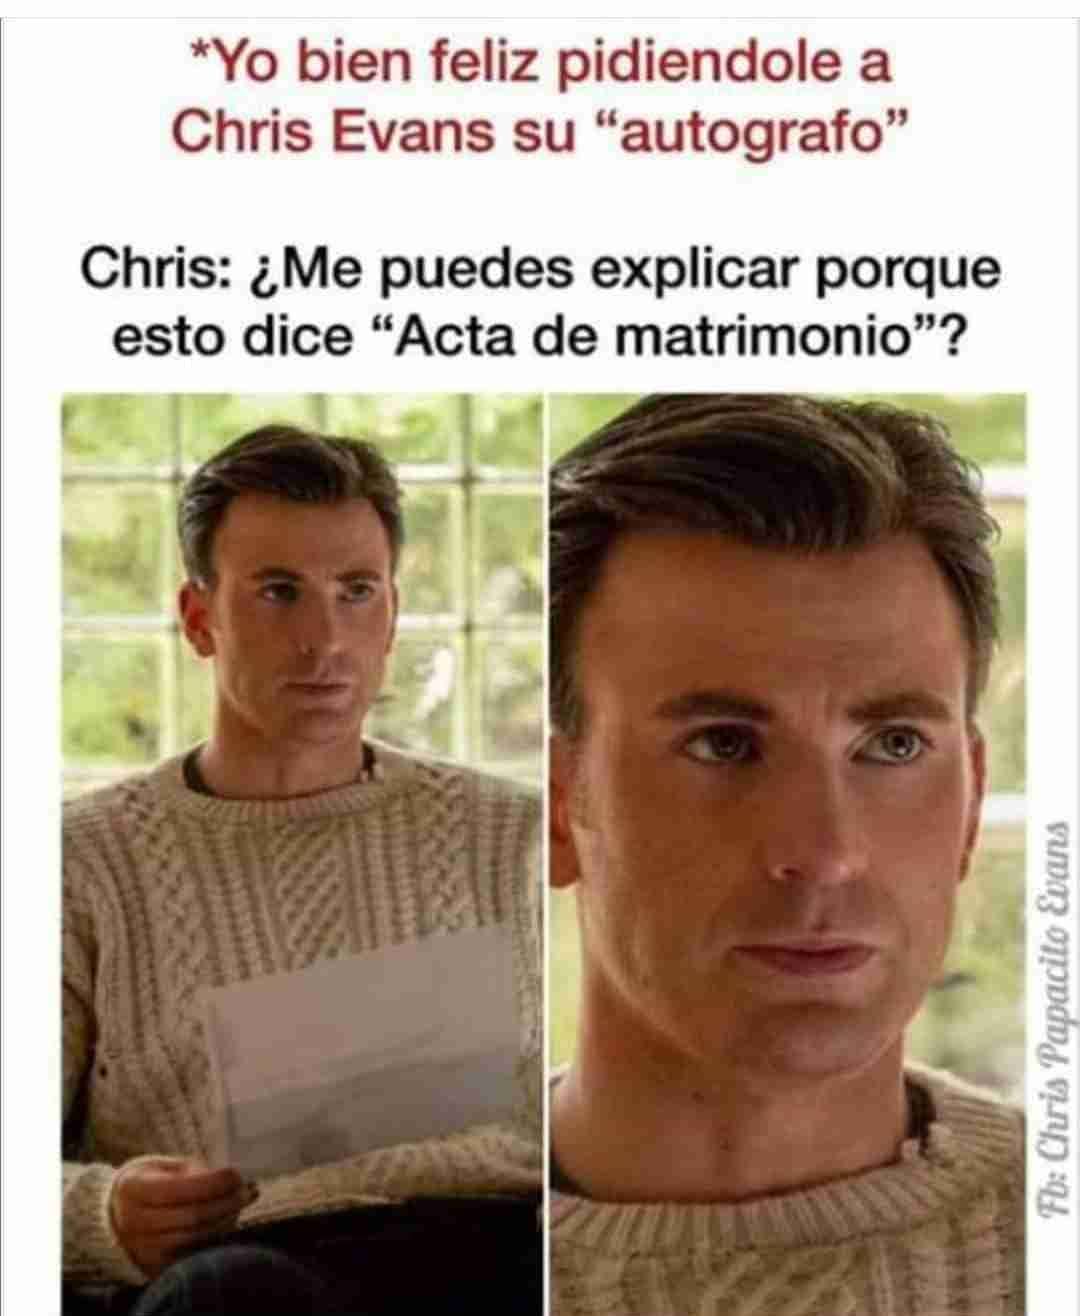 *Yo bien feliz pidiendole a Chris Evans su "autografo" Chris: ¿Me puedes explicar porque esto dice "Acta de matrimonio"?